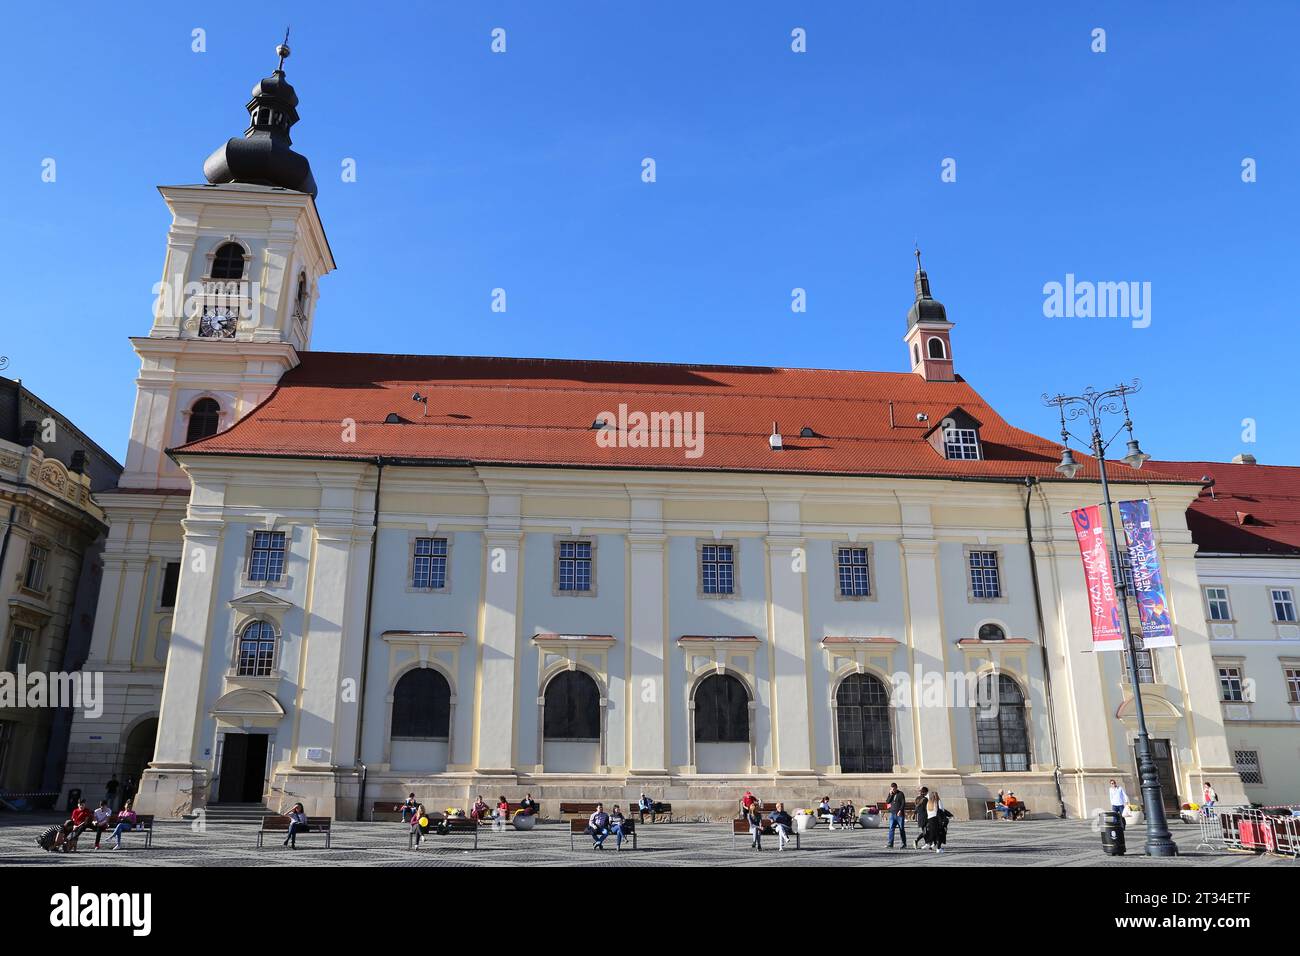 Biserica Romano Catolică Sfânta Treime (Holy Trinity Roman Catholic Church), Piața Mare, Sibiu, Sibiu County, Transylvania, Romania, Europe Stock Photo